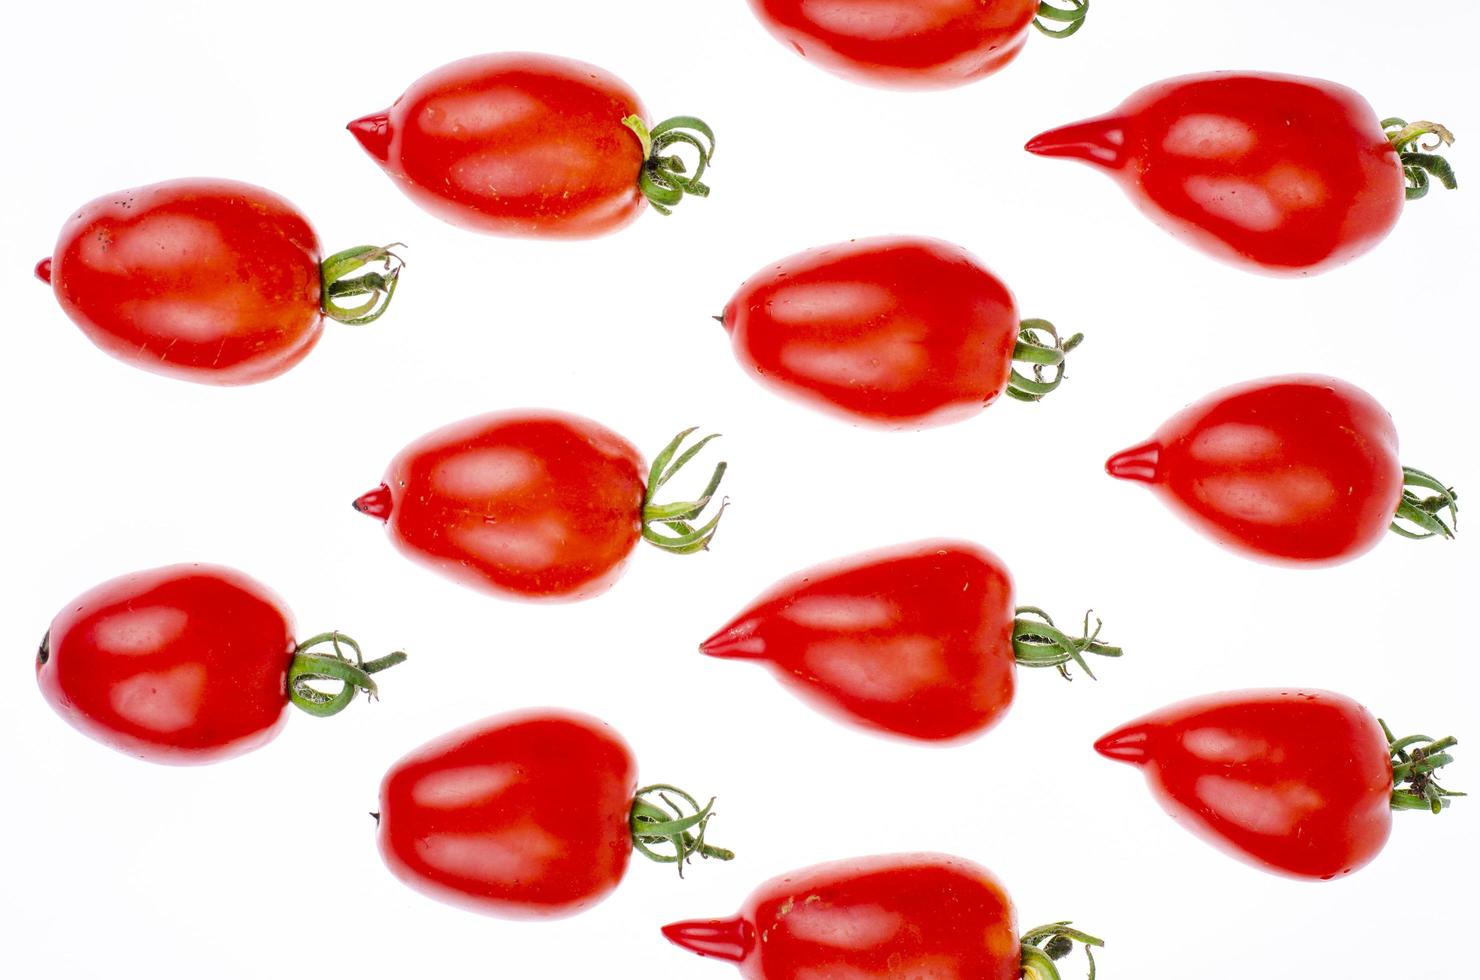 padrão alimentar, fundo - tomate vermelho isolado no branco. foto de estúdio.